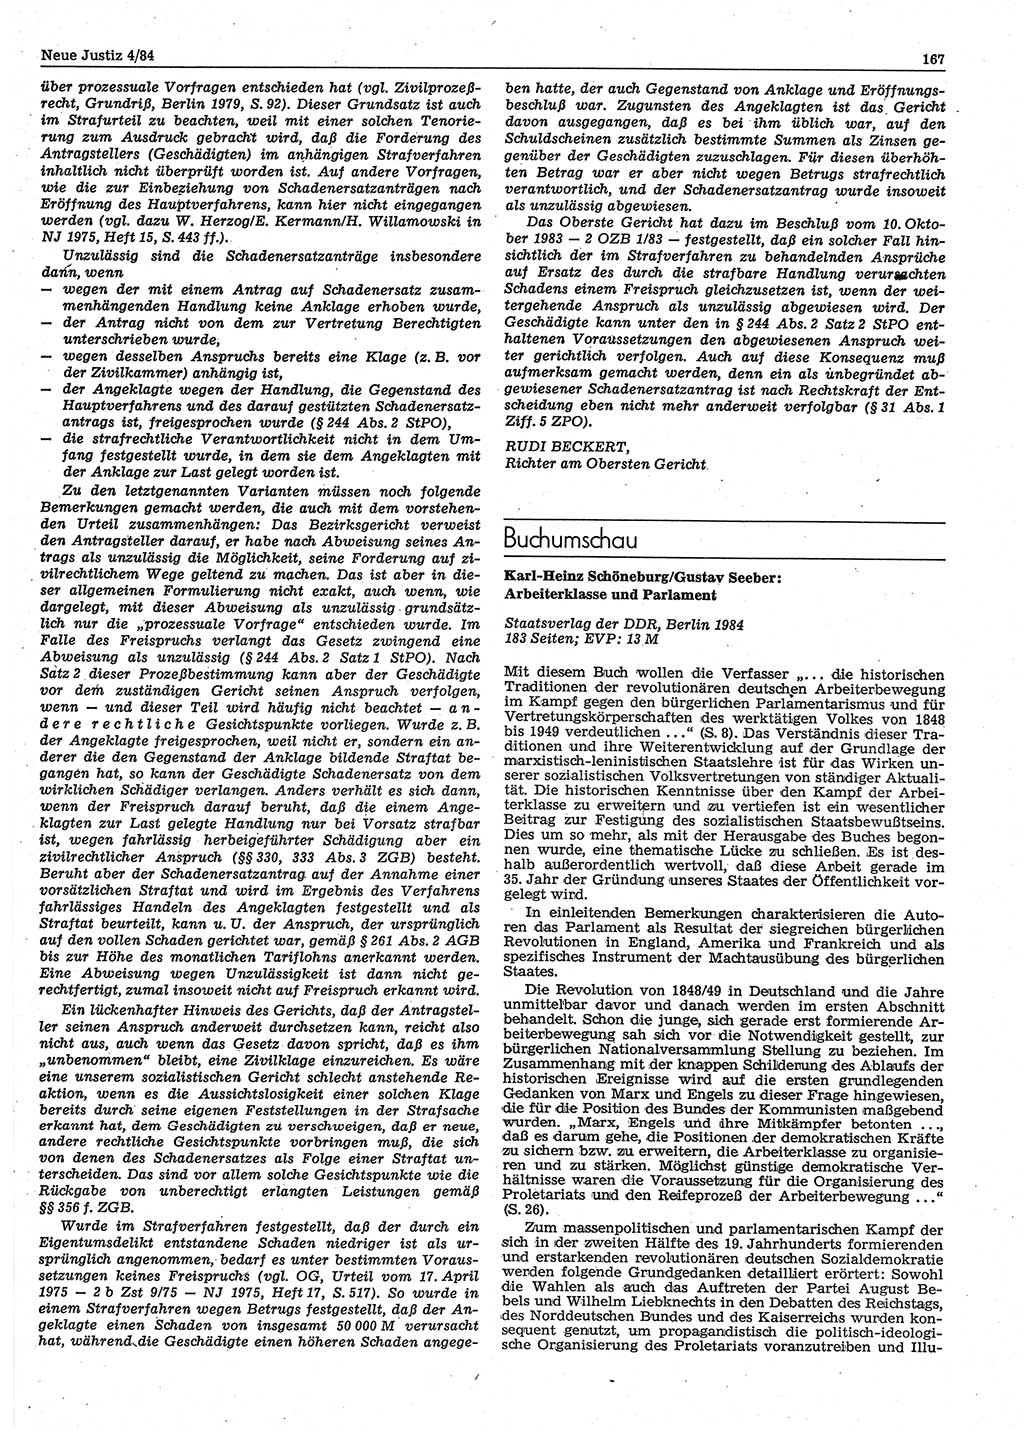 Neue Justiz (NJ), Zeitschrift für sozialistisches Recht und Gesetzlichkeit [Deutsche Demokratische Republik (DDR)], 38. Jahrgang 1984, Seite 167 (NJ DDR 1984, S. 167)